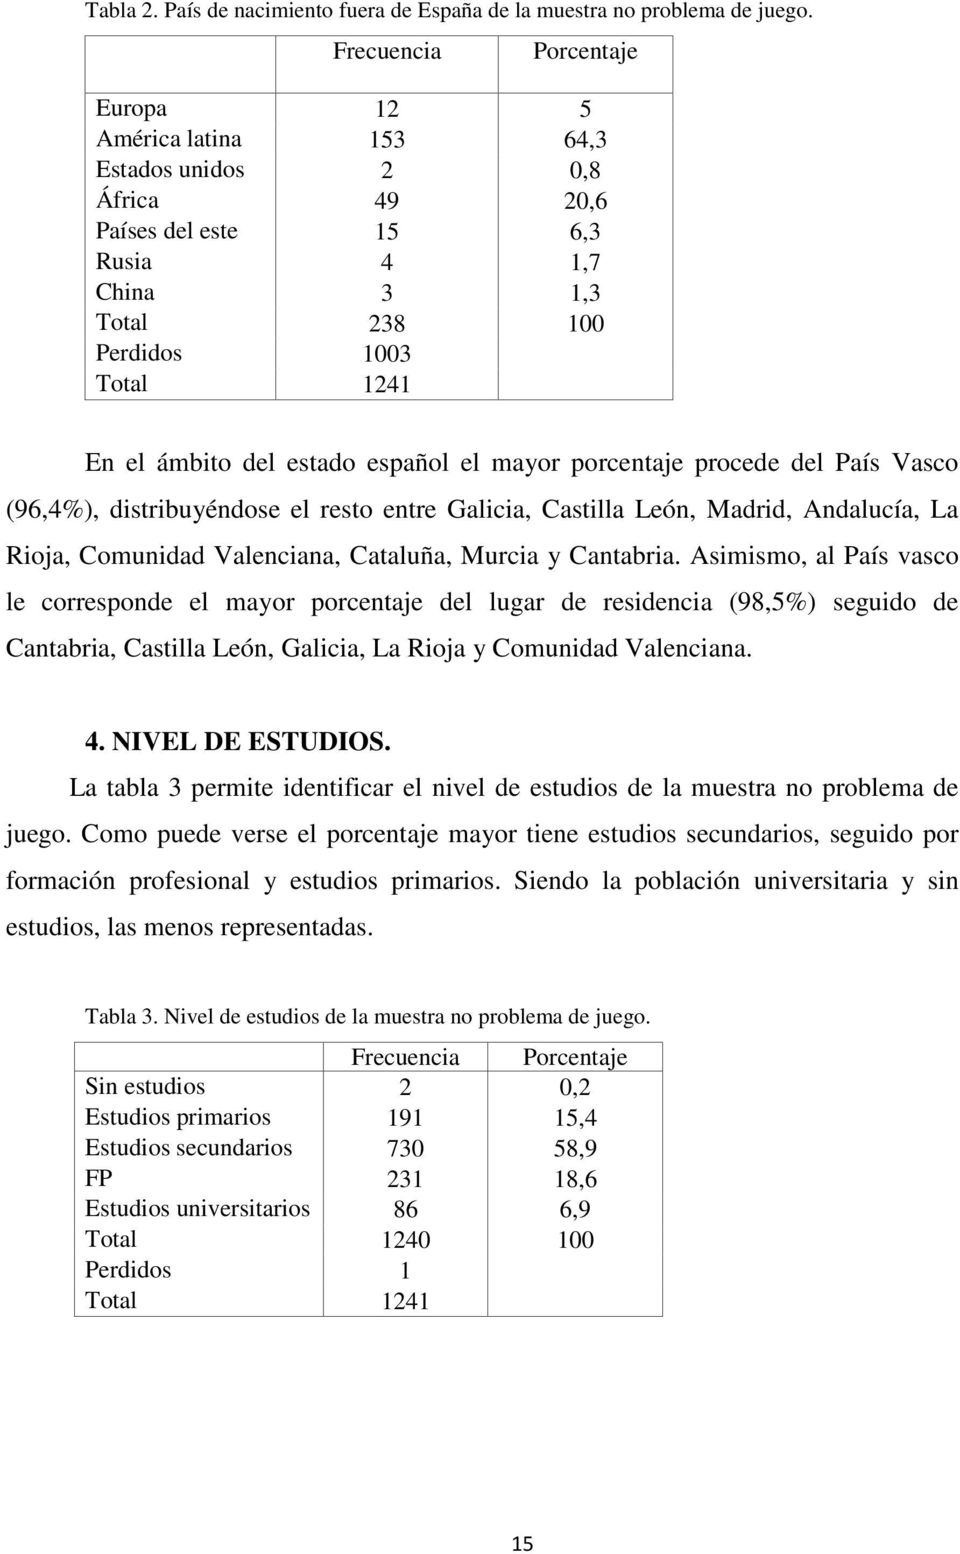 estado español el mayor porcentaje procede del País Vasco (96,4%), distribuyéndose el resto entre Galicia, Castilla León, Madrid, Andalucía, La Rioja, Comunidad Valenciana, Cataluña, Murcia y